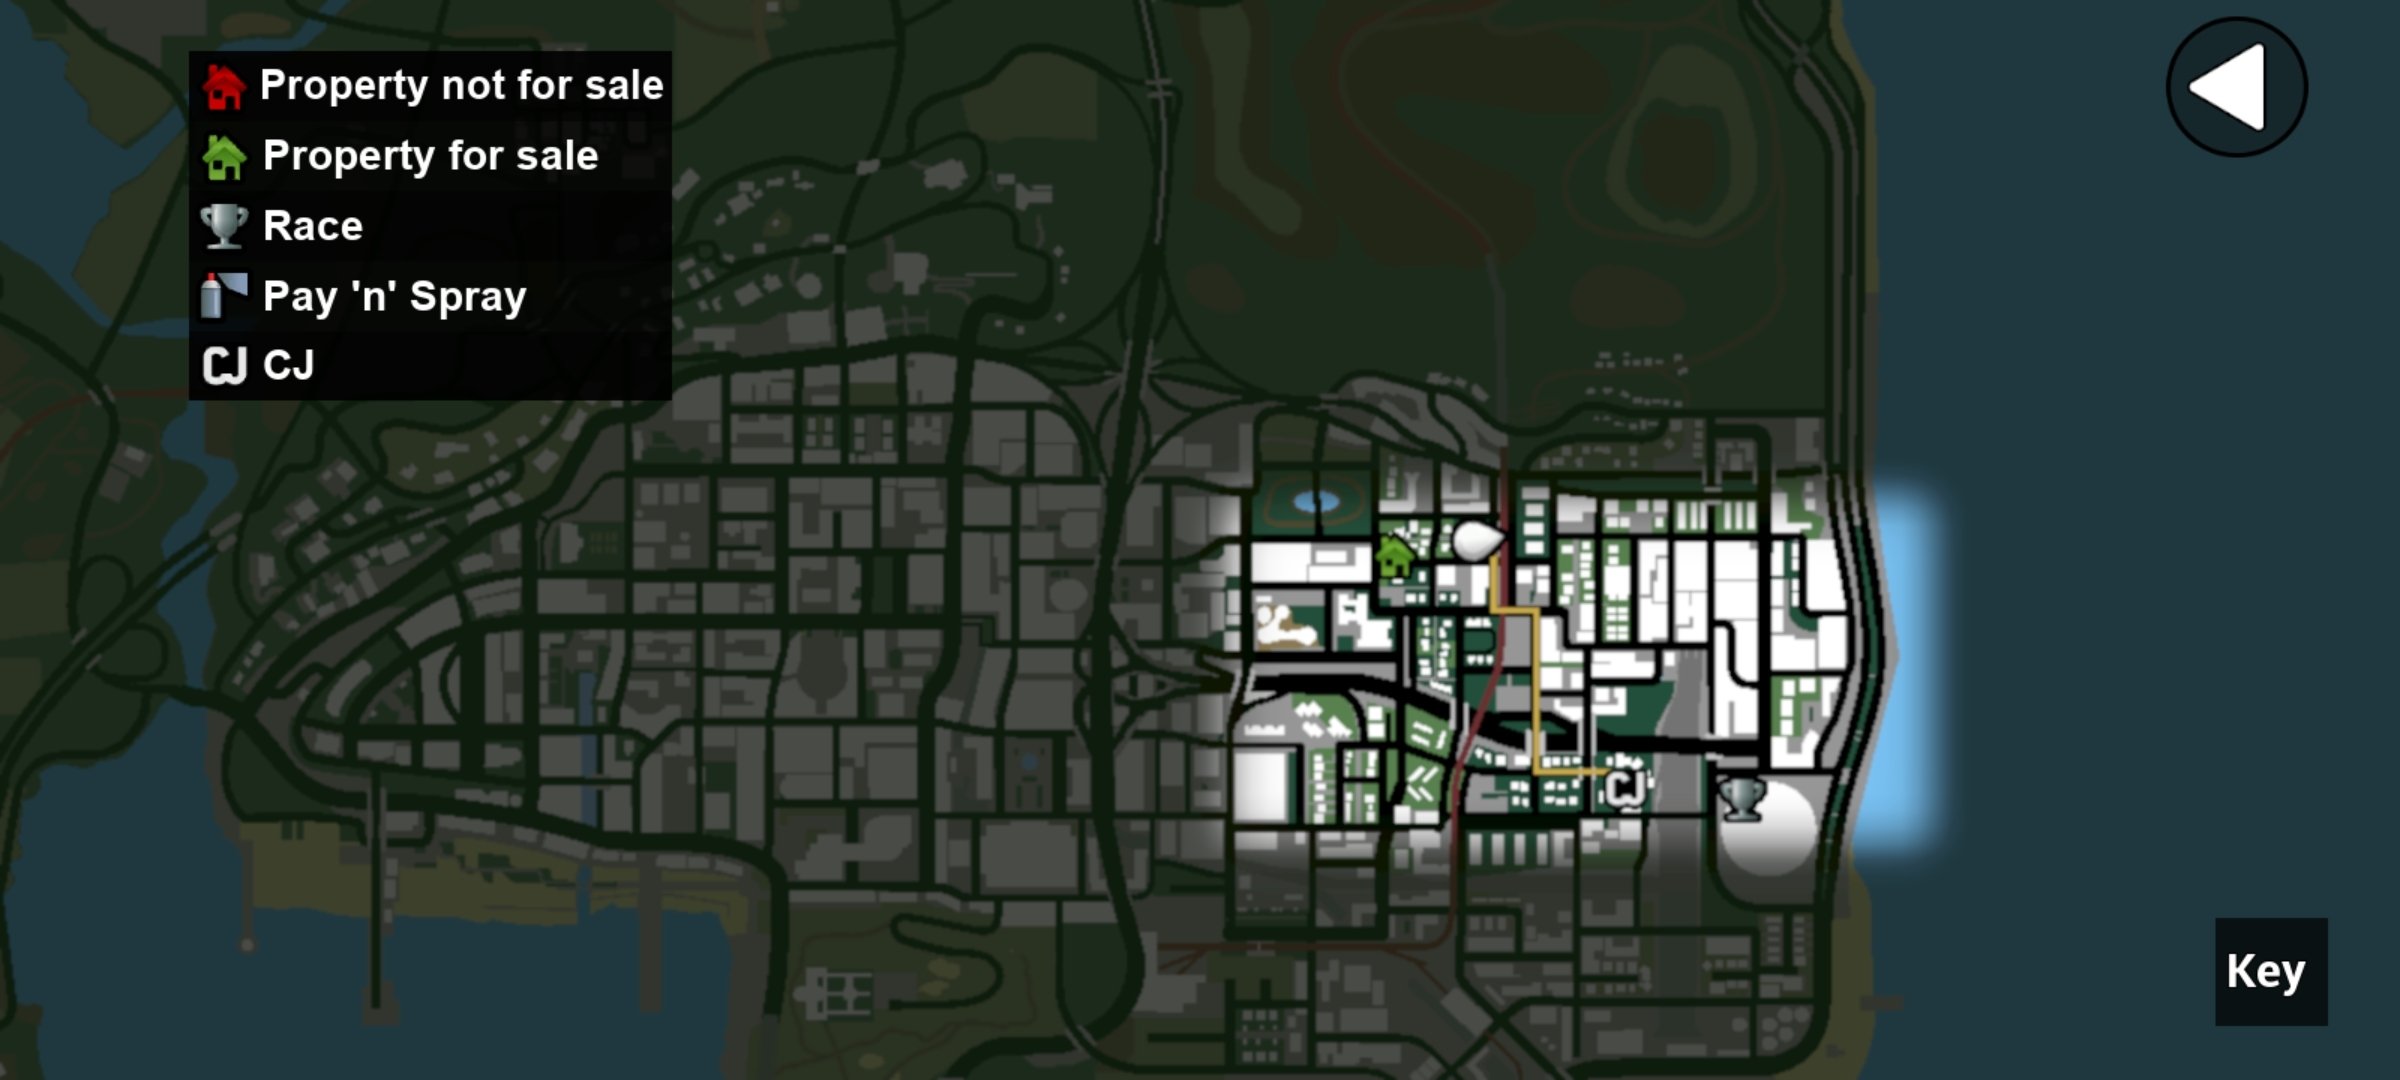 Descargar GTA San Andreas - Grand Theft Auto 1.72 APK Gratis para